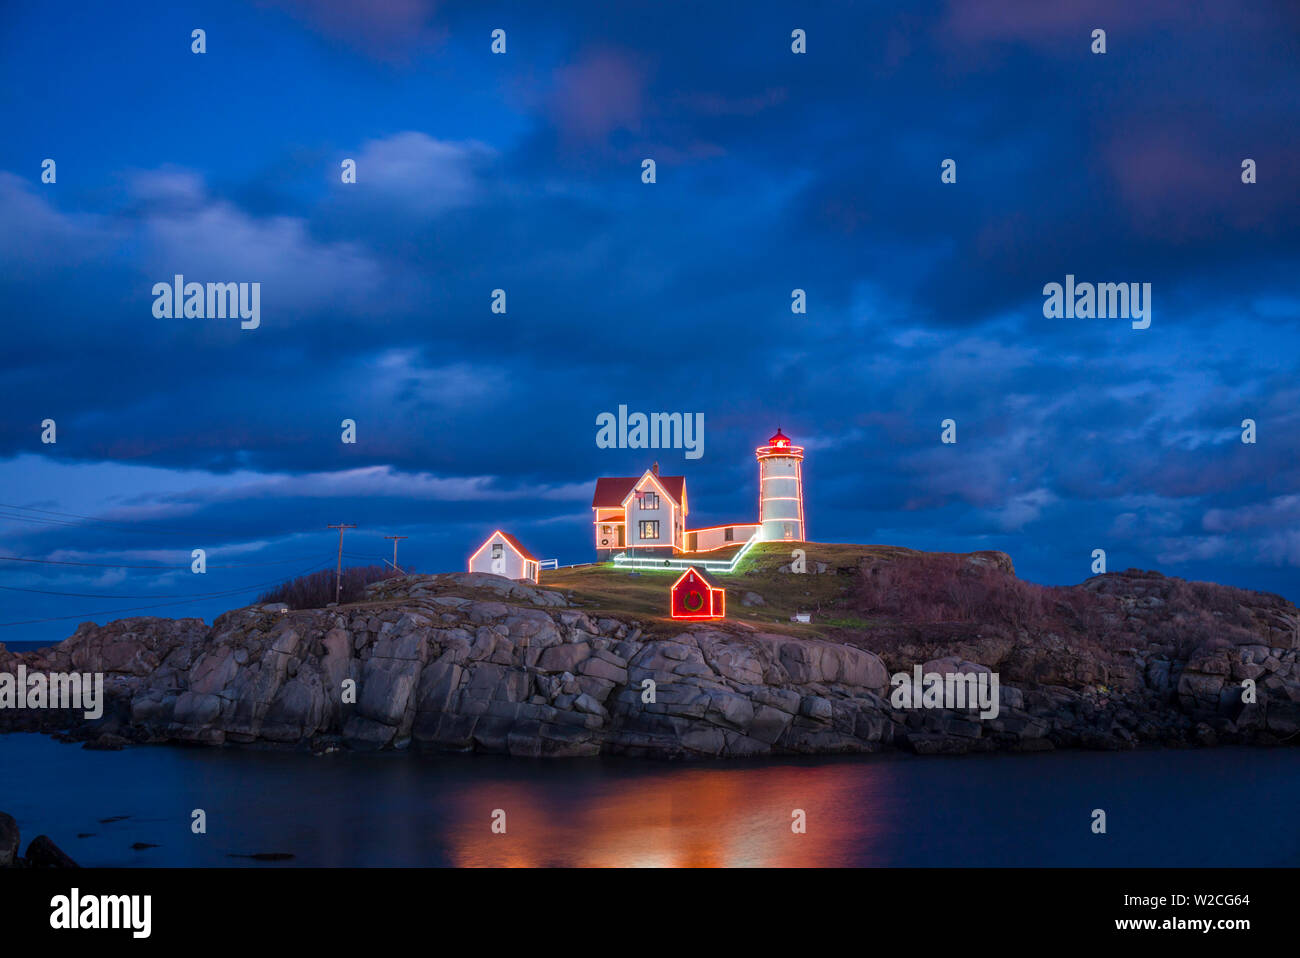 USA (Maine), York Beach, phare de Nubble Light avec des décorations de Noël, crépuscule Banque D'Images